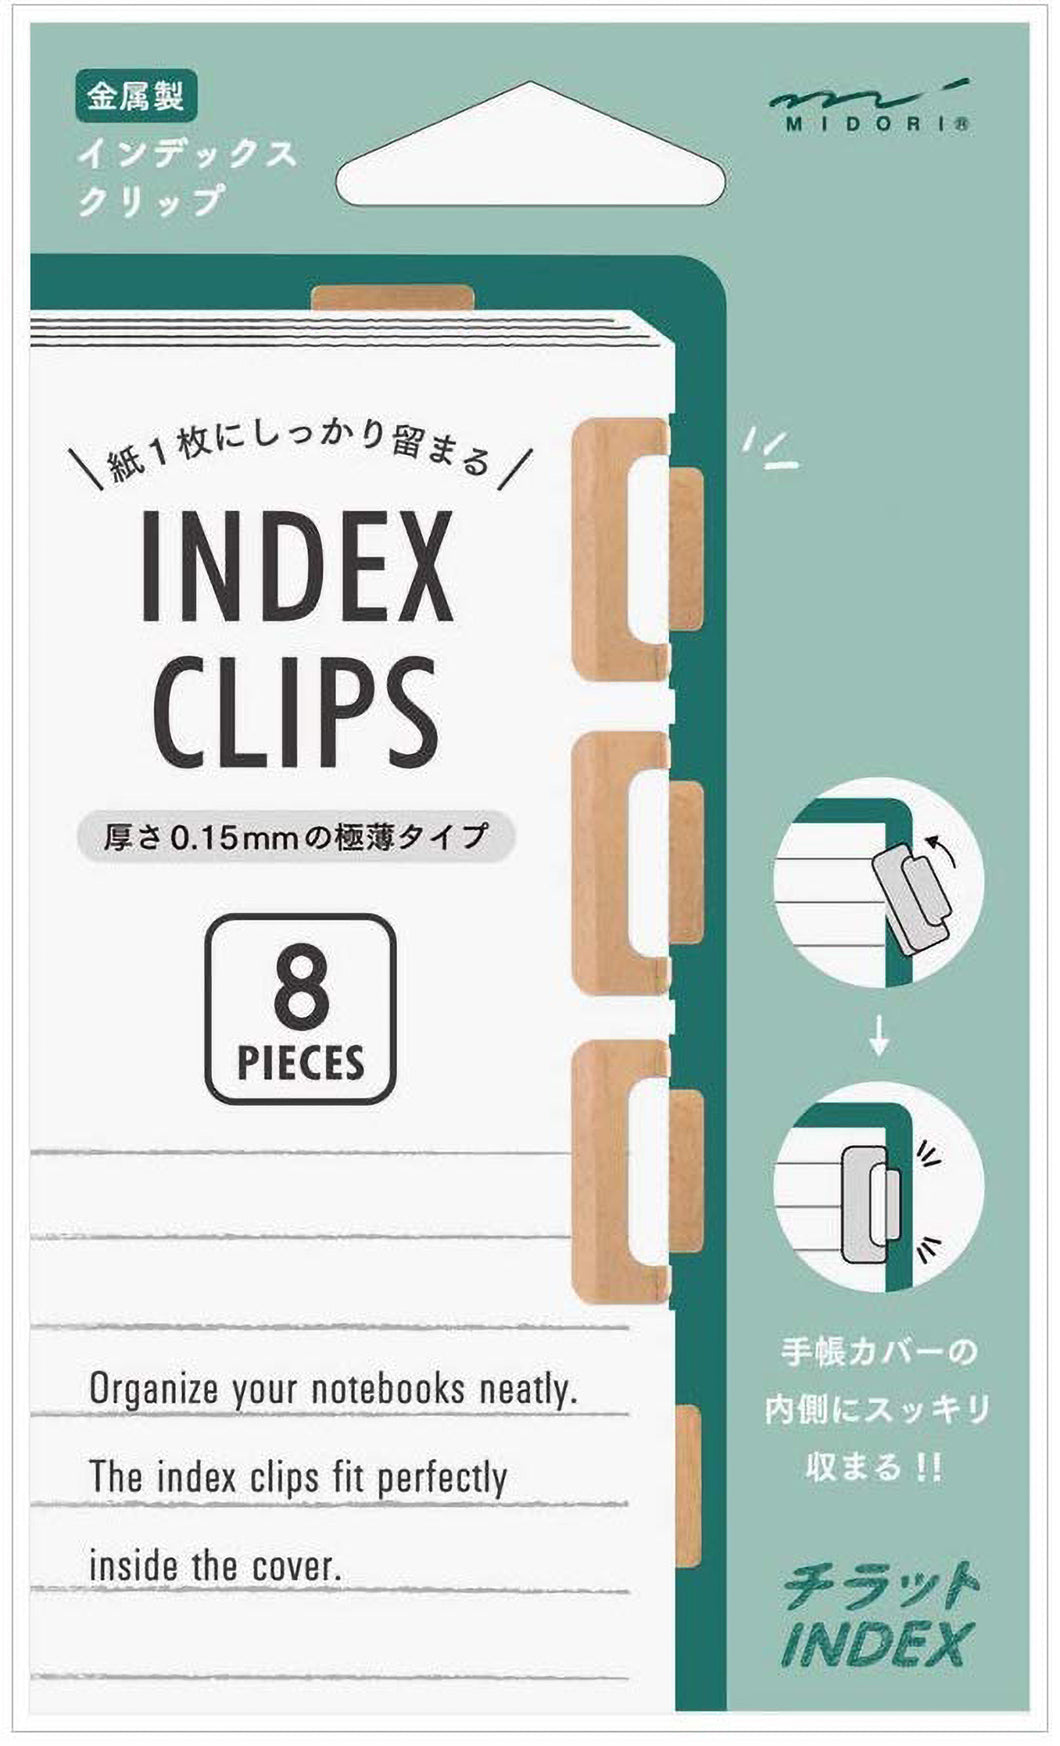 Index clips • Dourado Velho • Midori